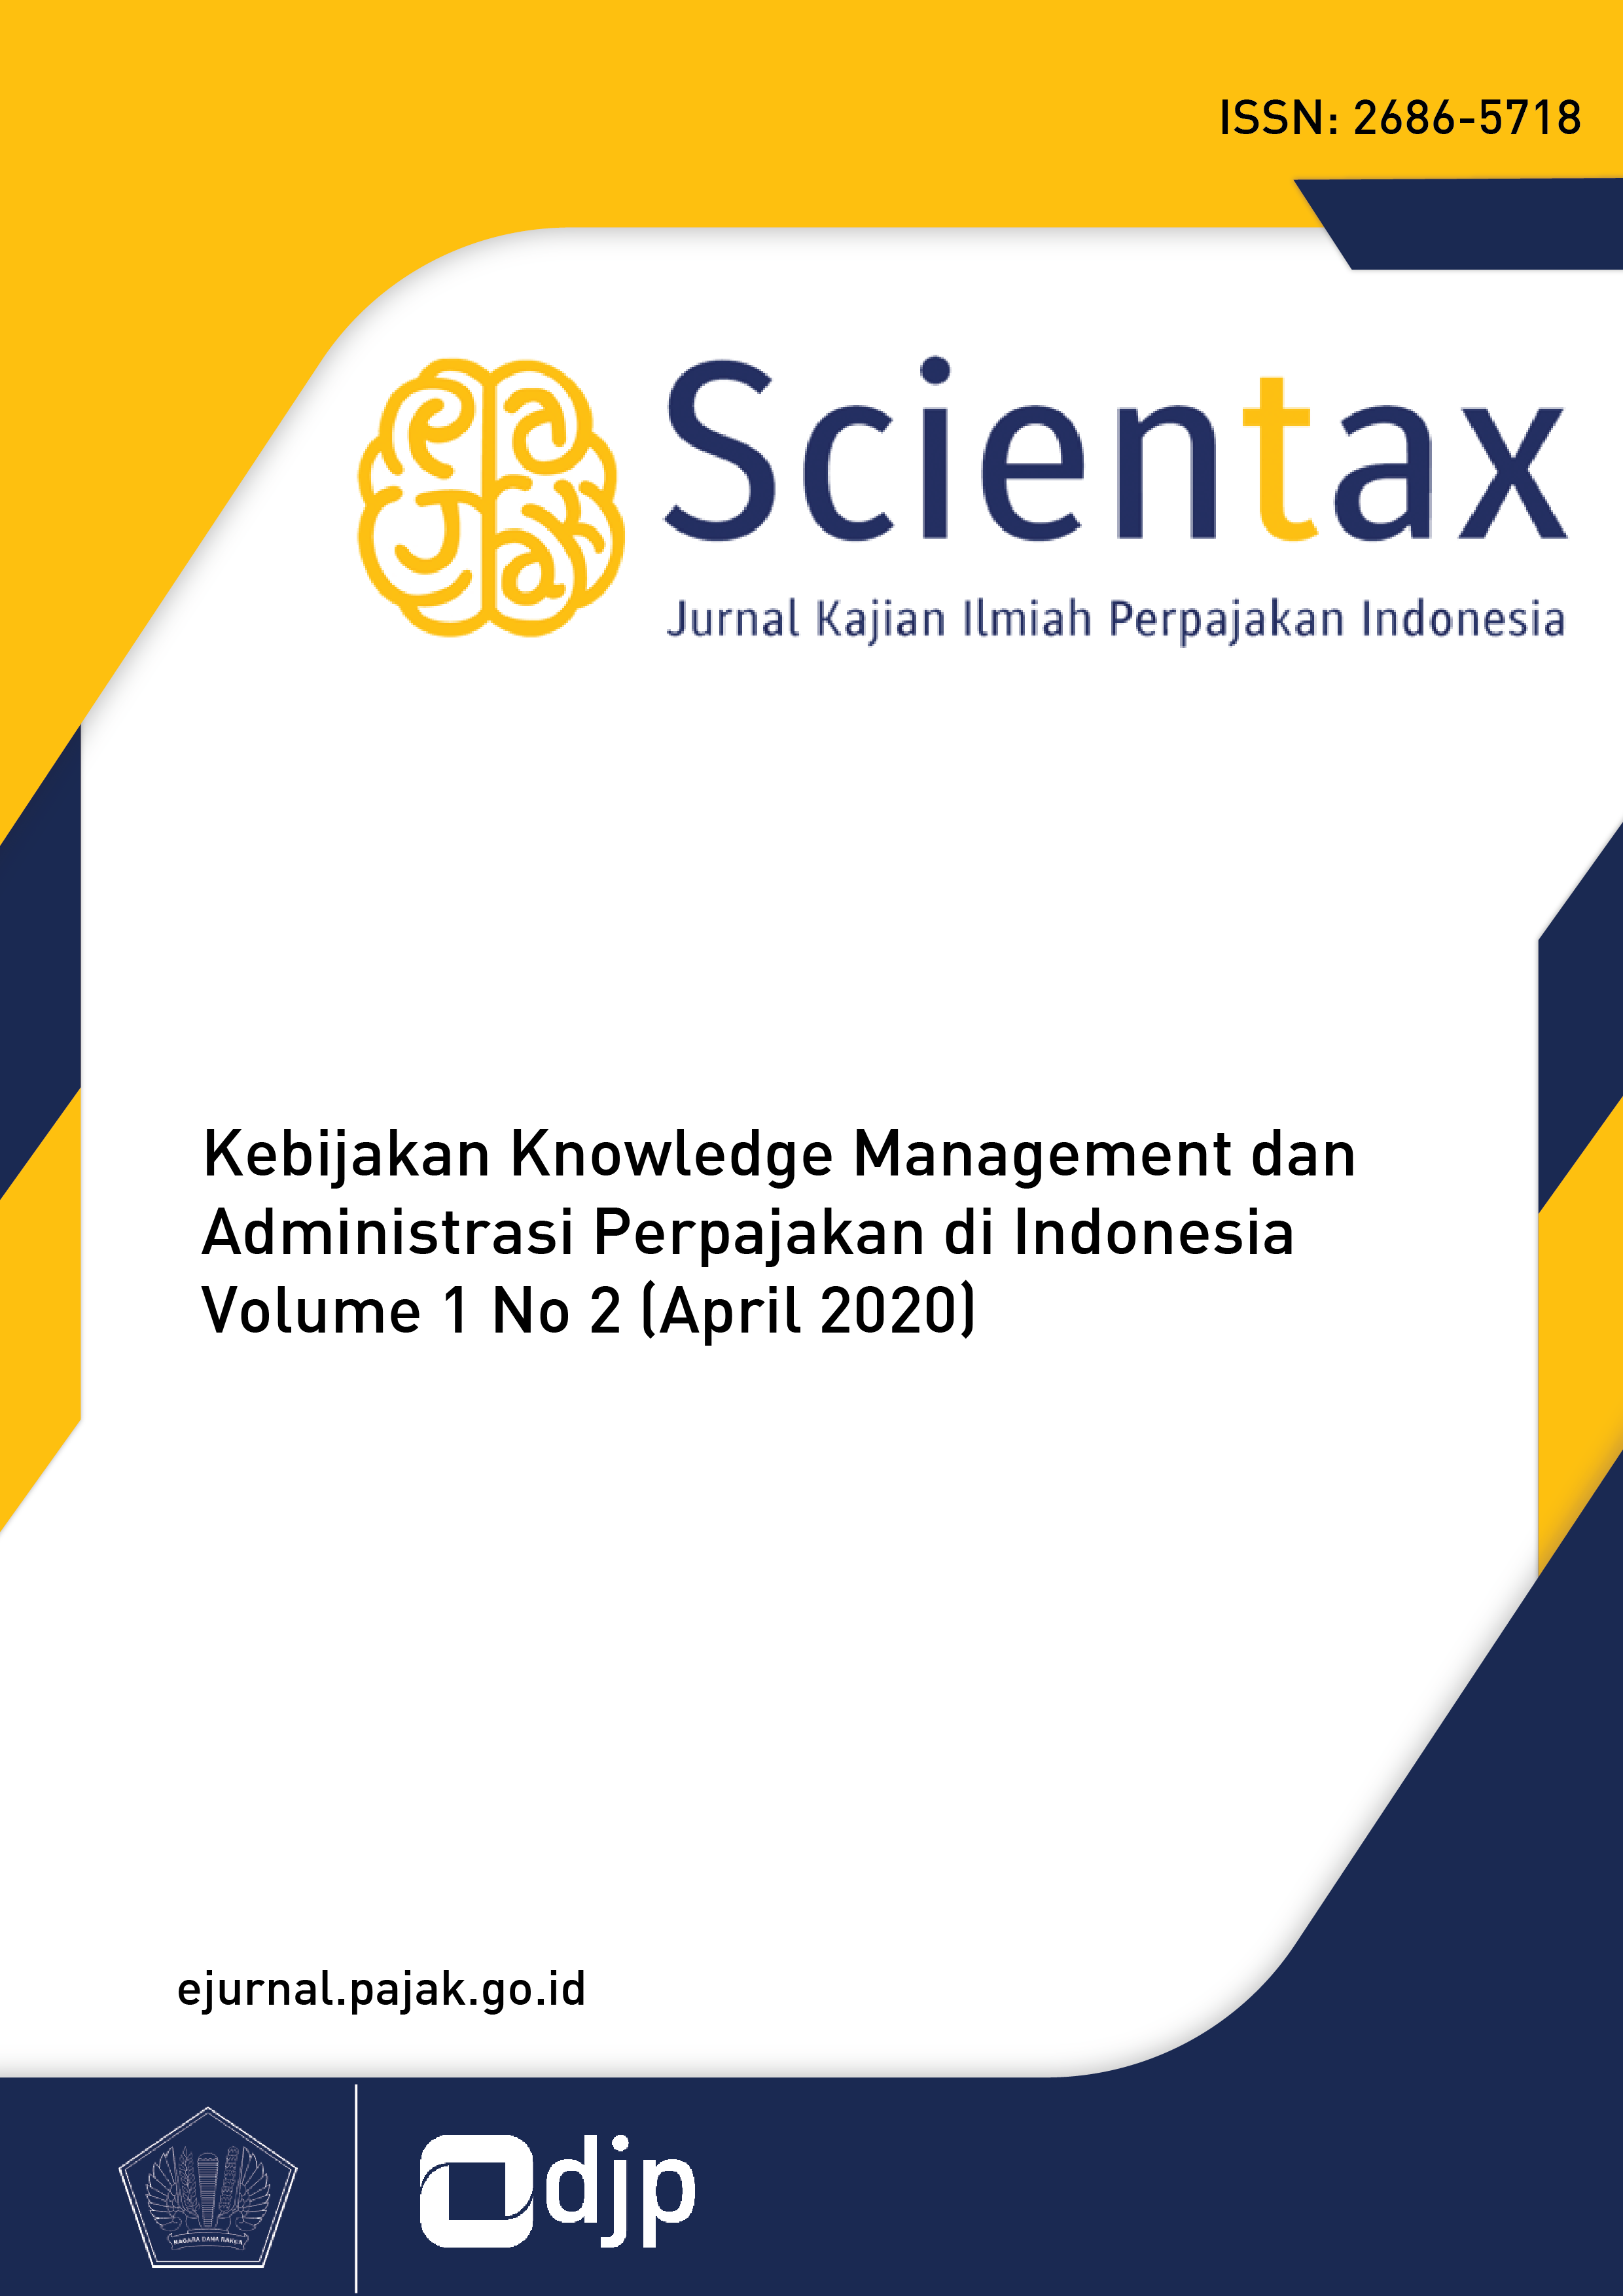 					View Vol. 1 No. 2 (2020): April: Kebijakan Knowledge Management dan Administrasi Perpajakan di Indonesia
				